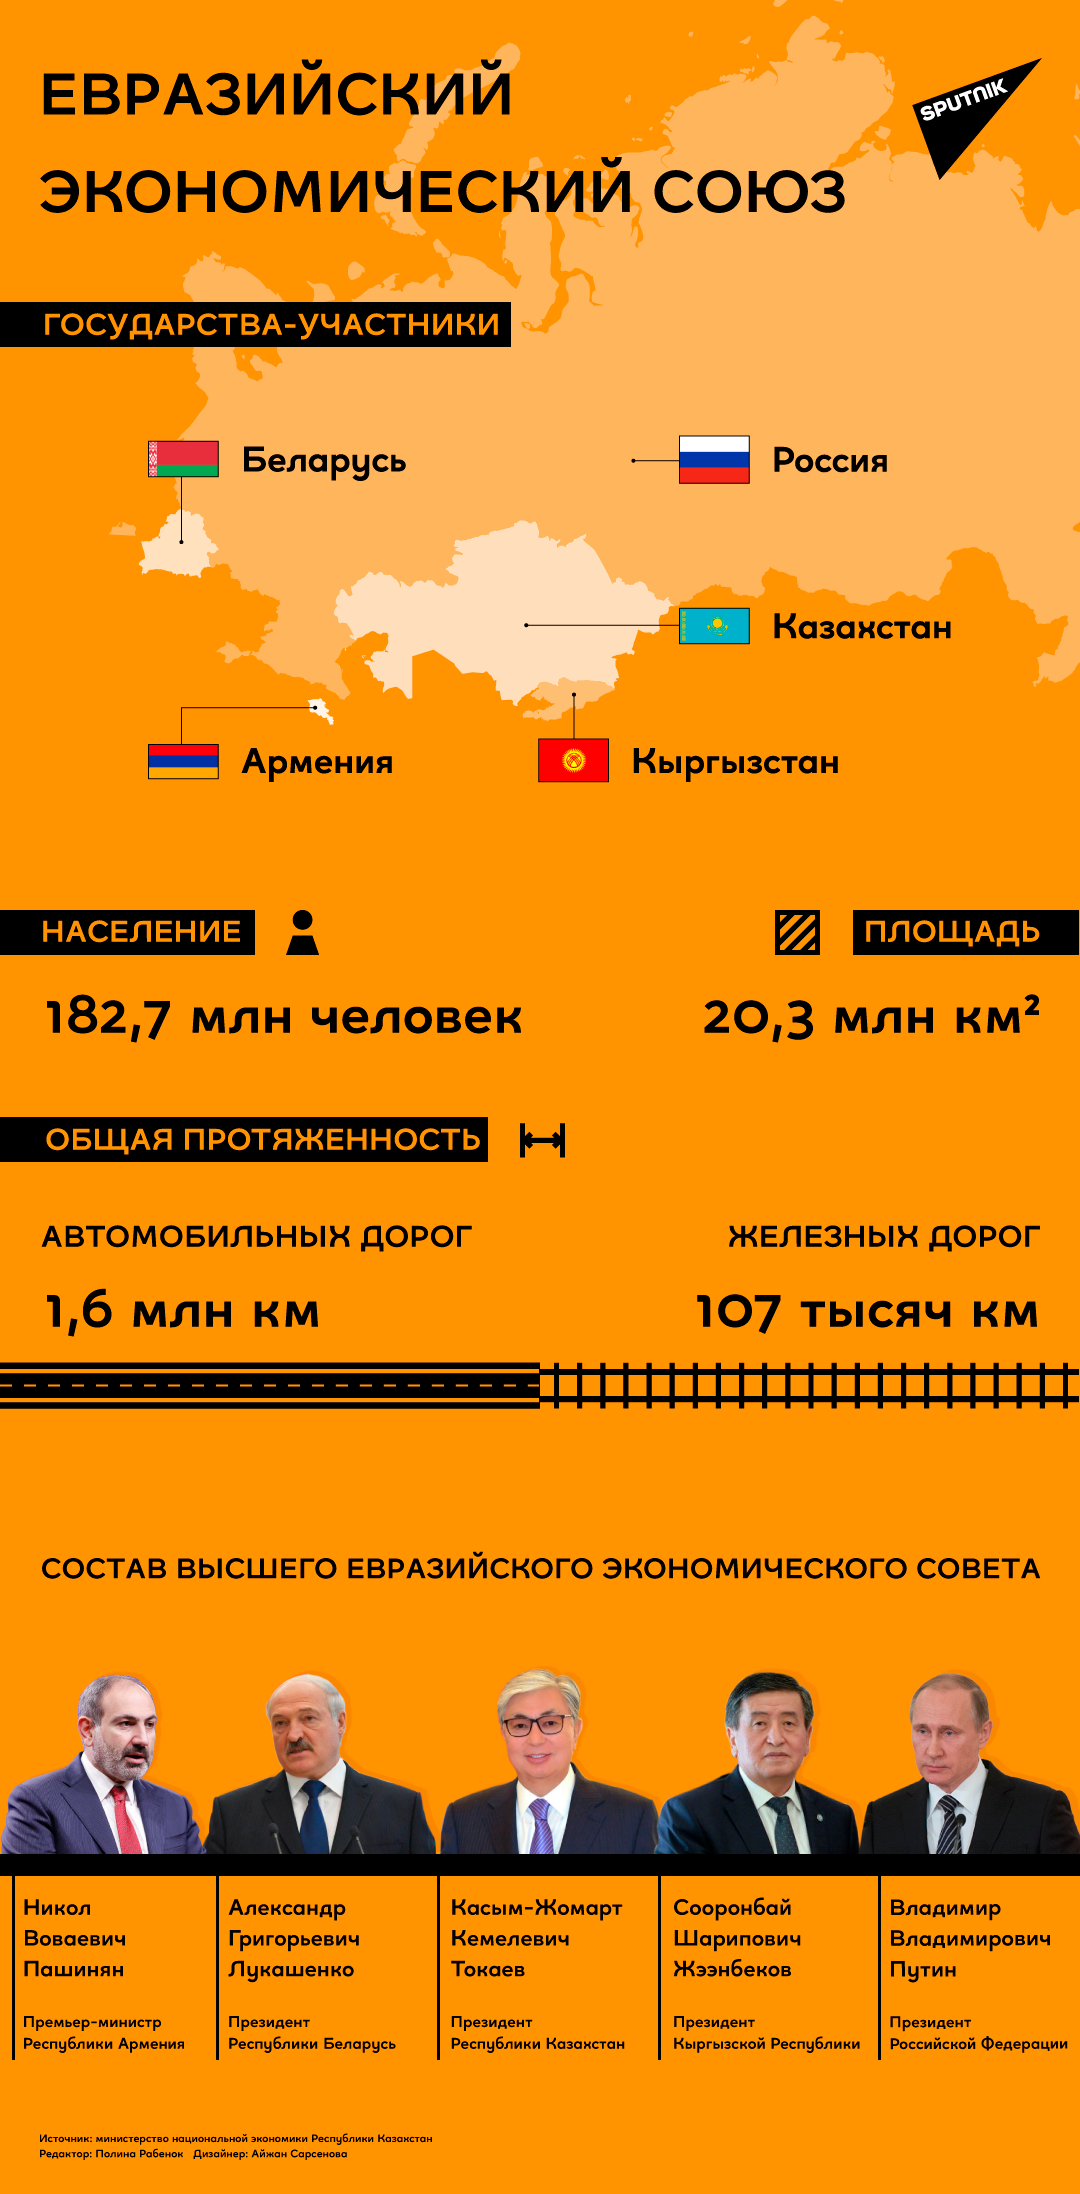 ЕАЭС: страны, площадь, население - Sputnik Армения